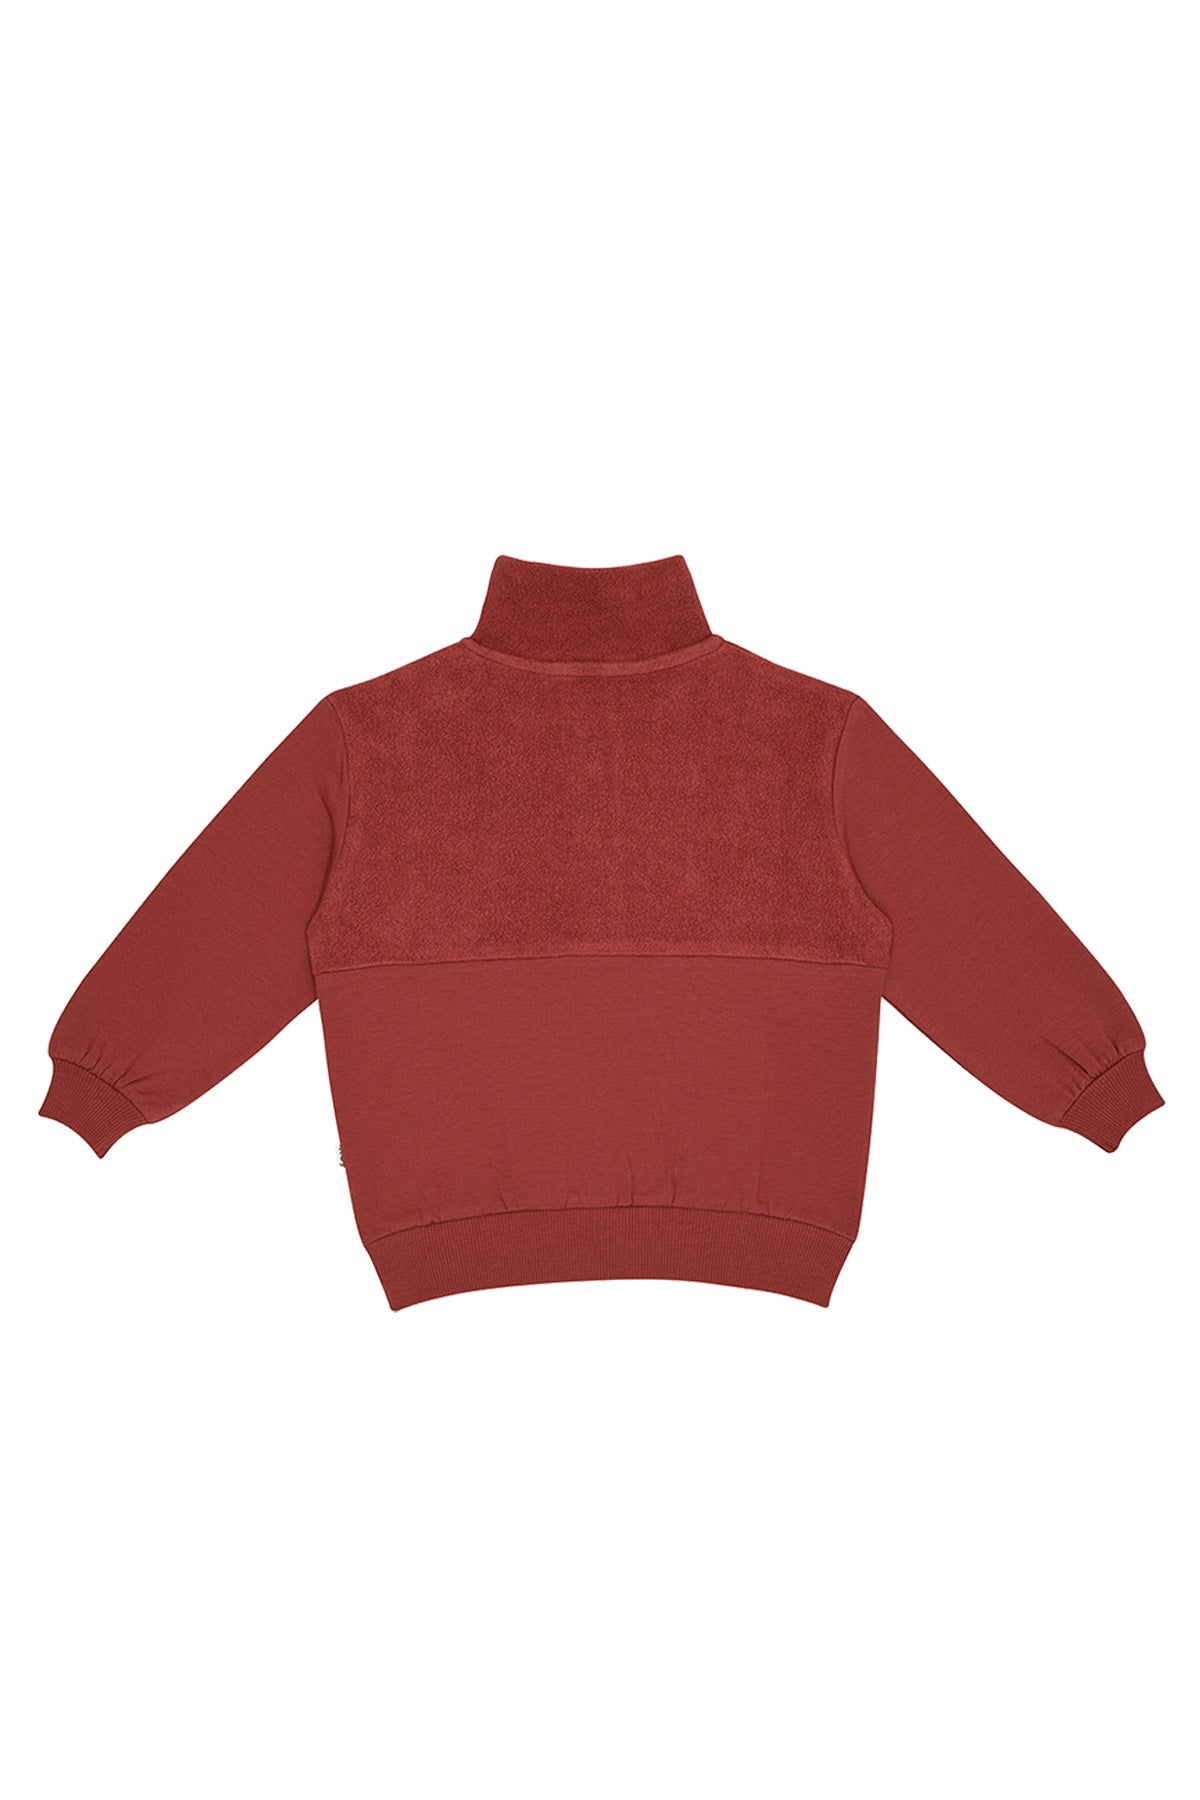 Zip Sweater - Rustic Red